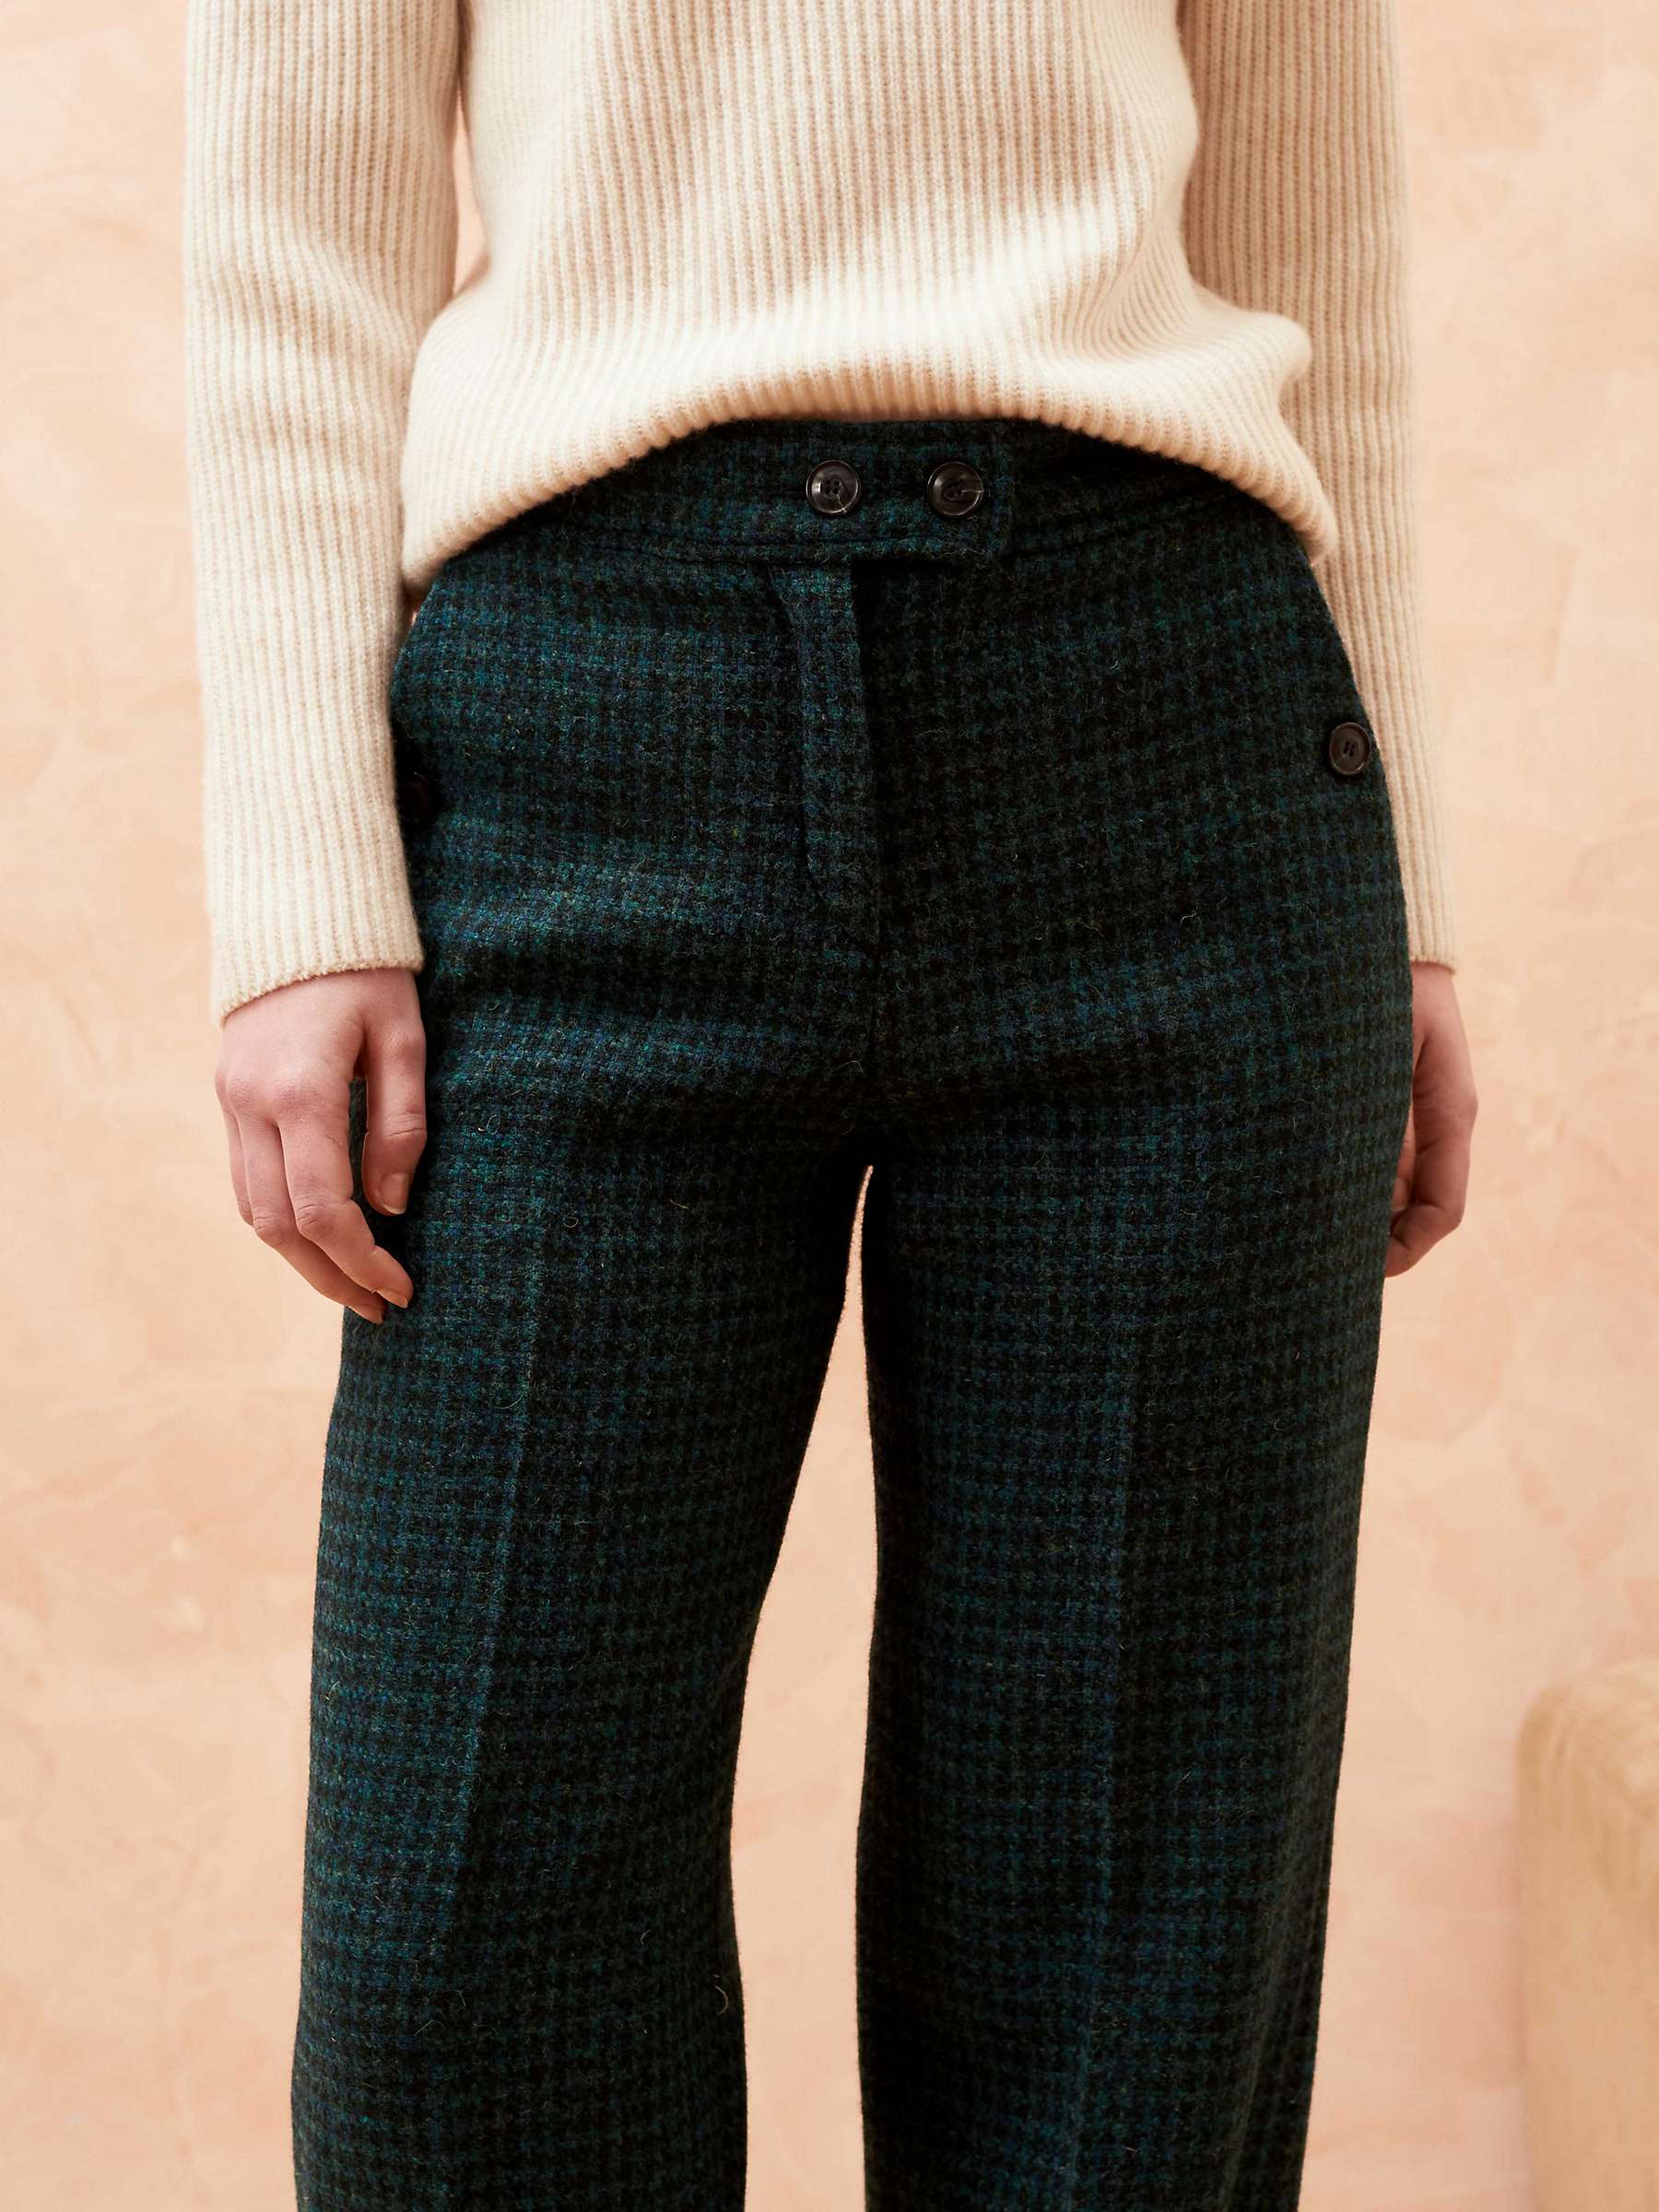 Buy Brora Harris Tweed Houndstooth Trousers, Multi Online at johnlewis.com